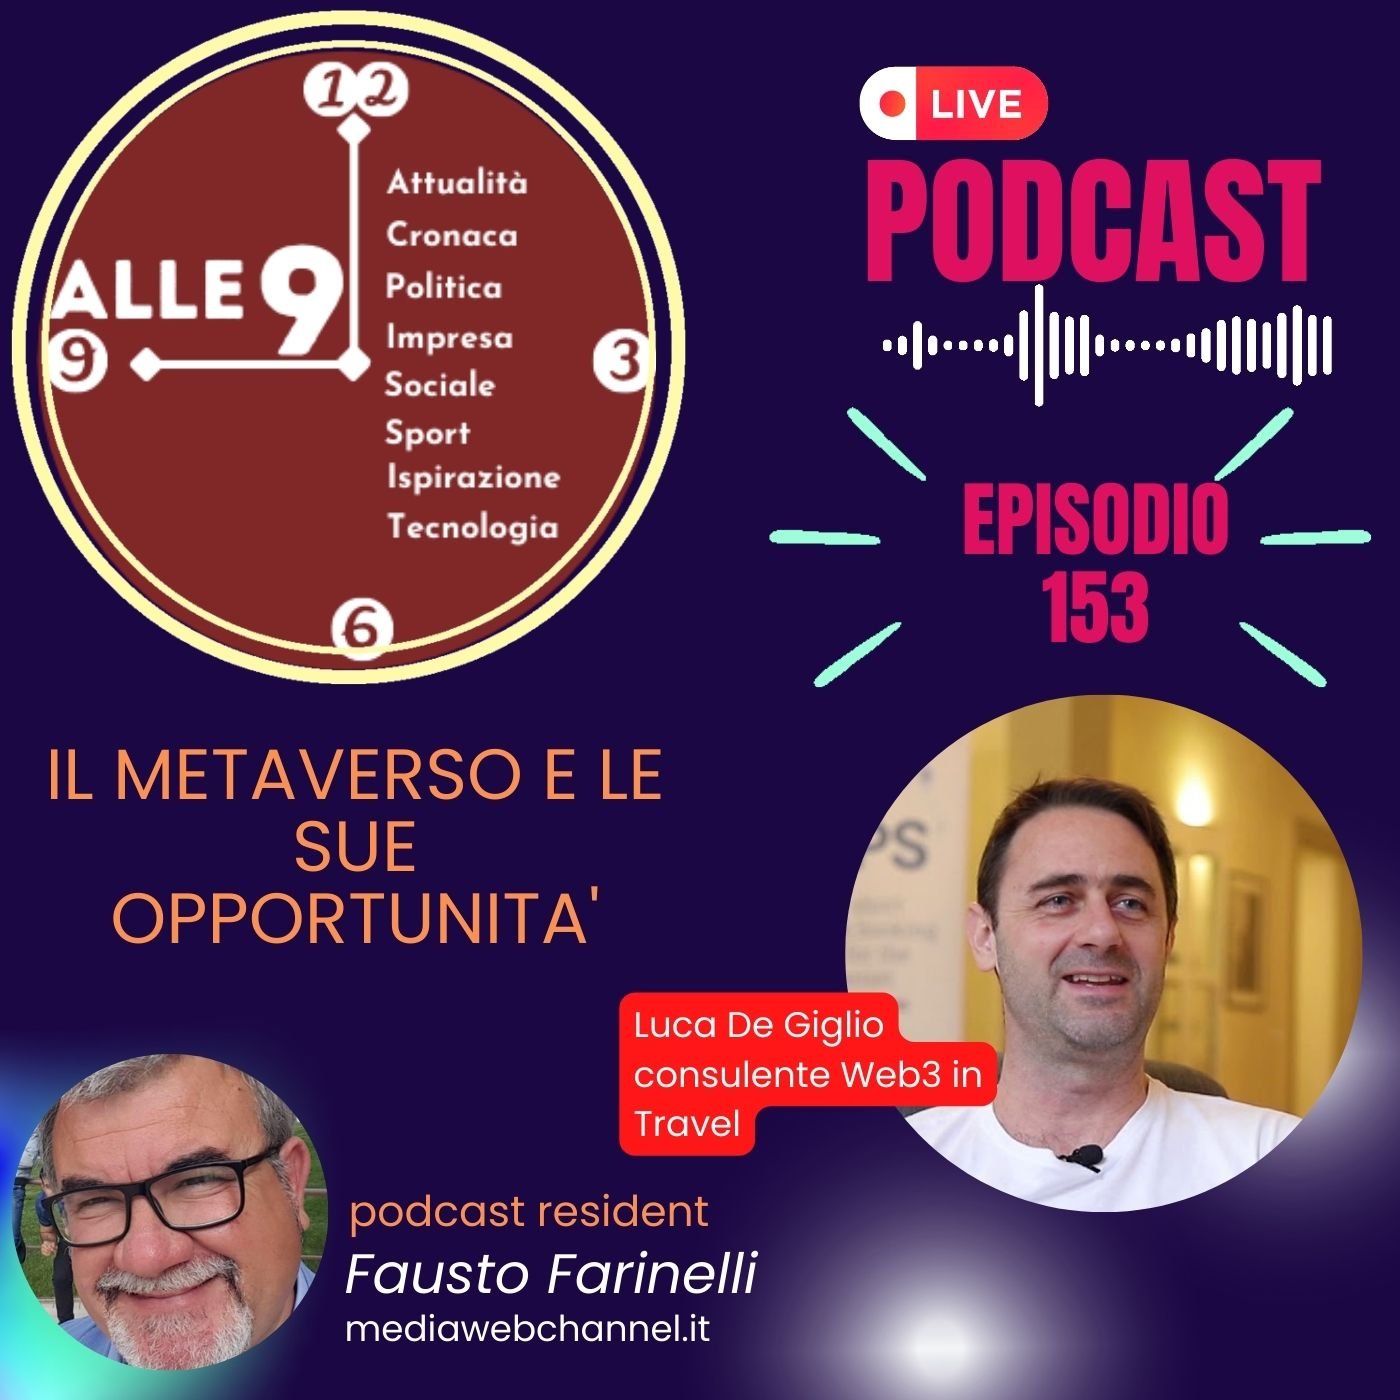 Podcast Video alle nove, ep. 153: il metaverso e le sue opportunità. Con Luca De Giglio.